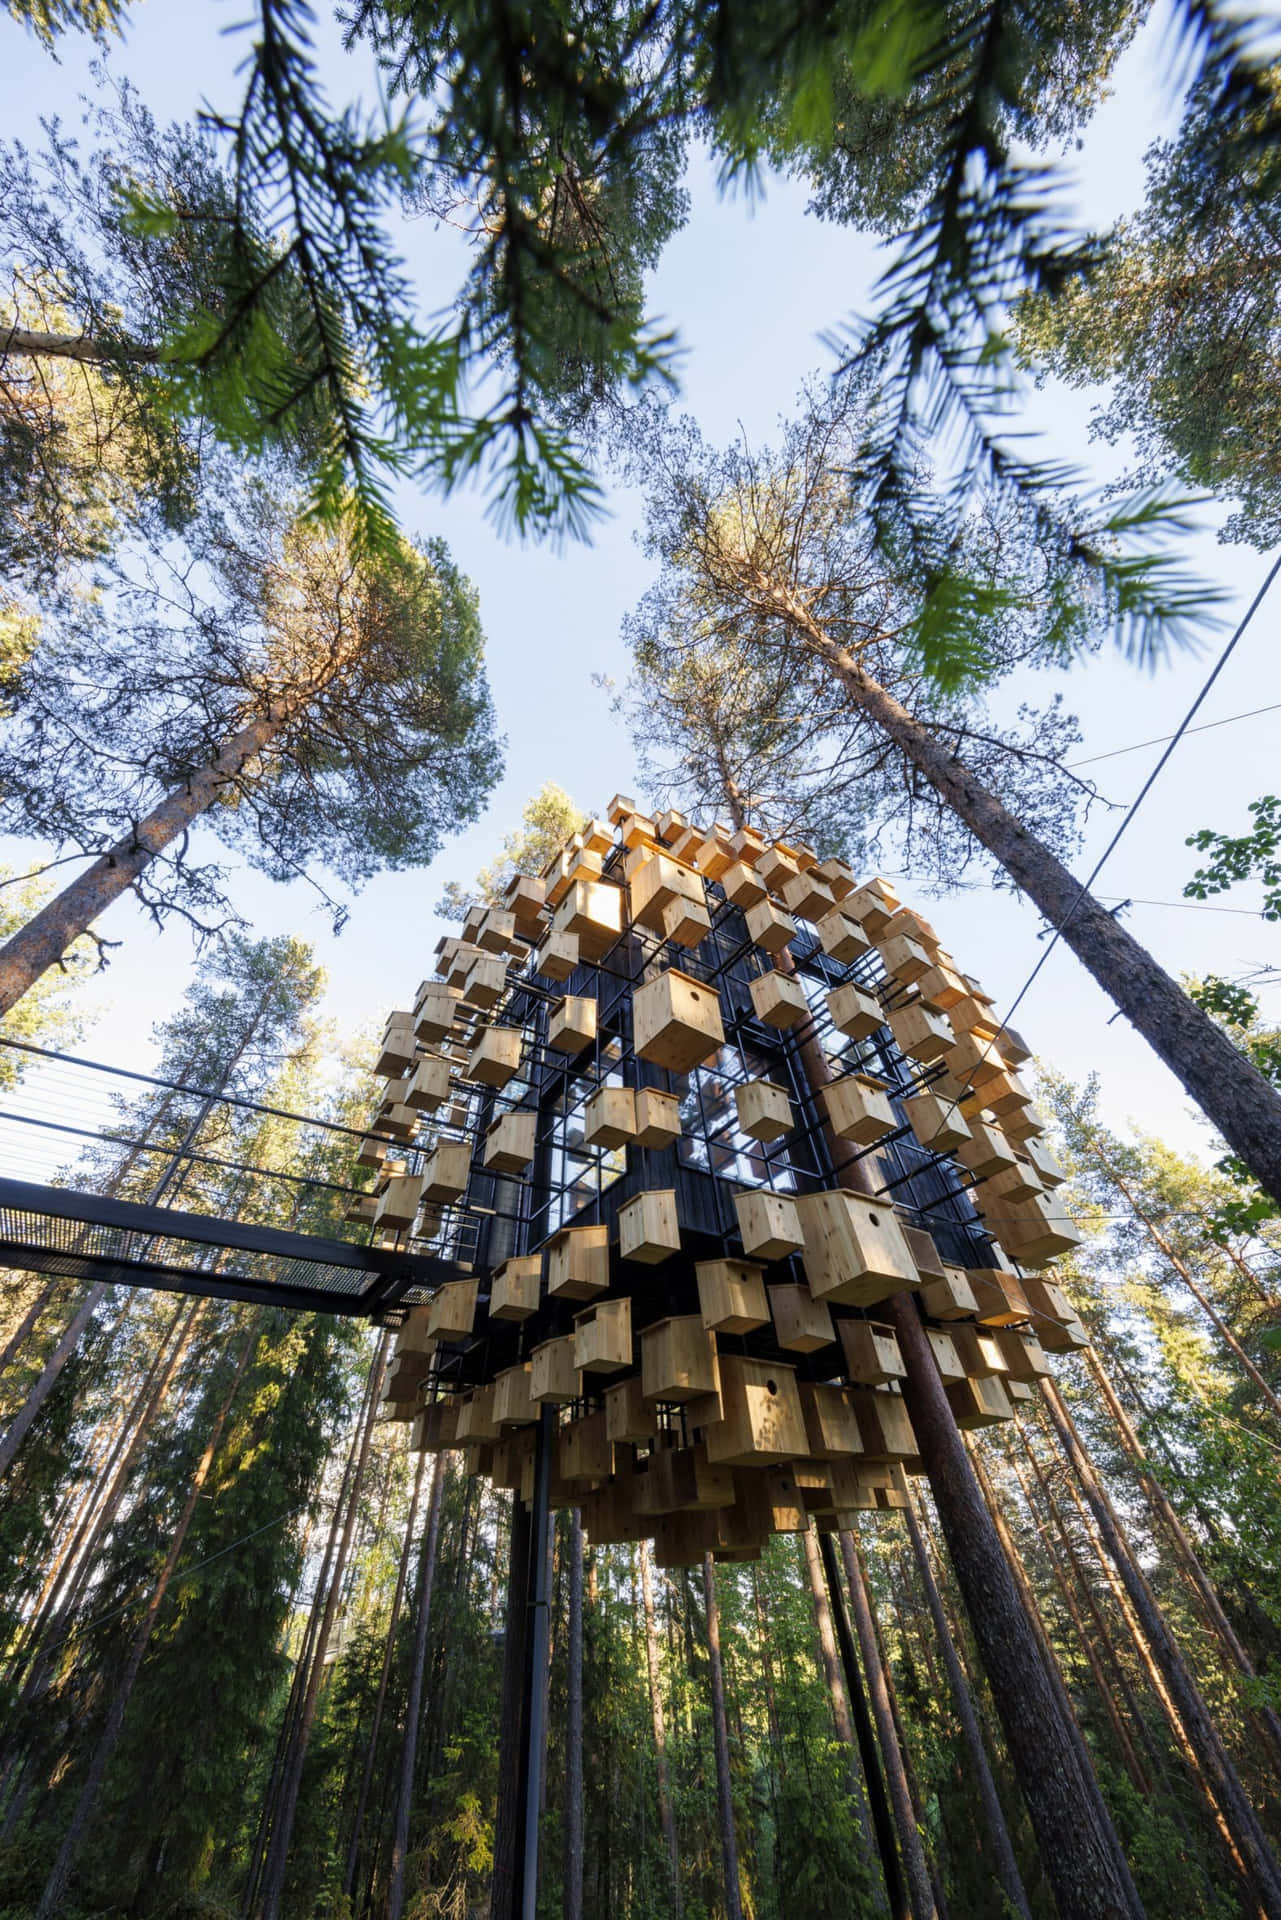 Einbaumhaus Aus Holzblöcken Im Wald